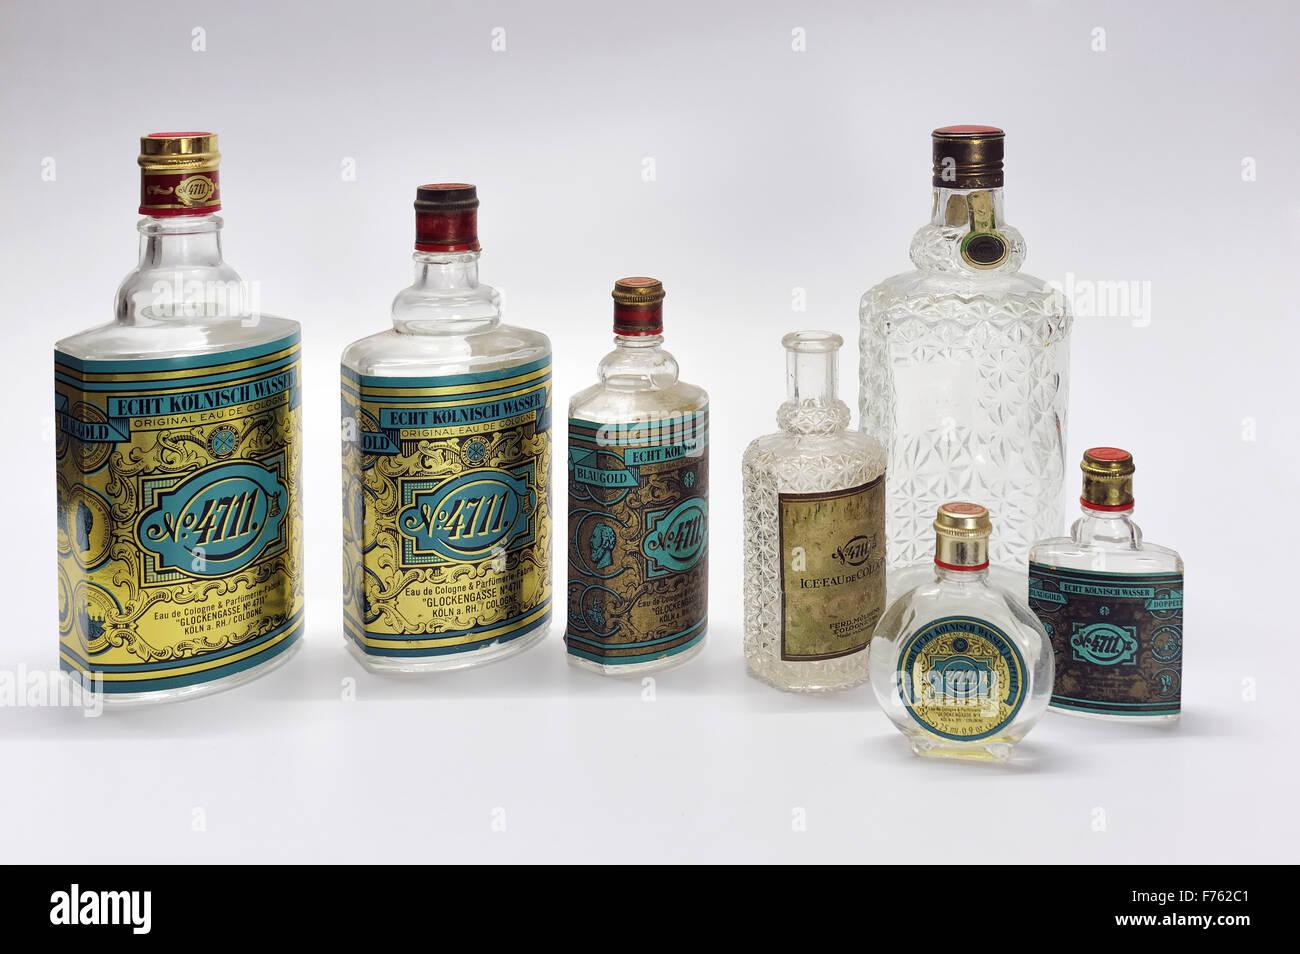 glass bottles, old bottles, antique bottles, vintage bottles, perfume bottles, 4711 bottles, Eau de cologne bottles Stock Photo